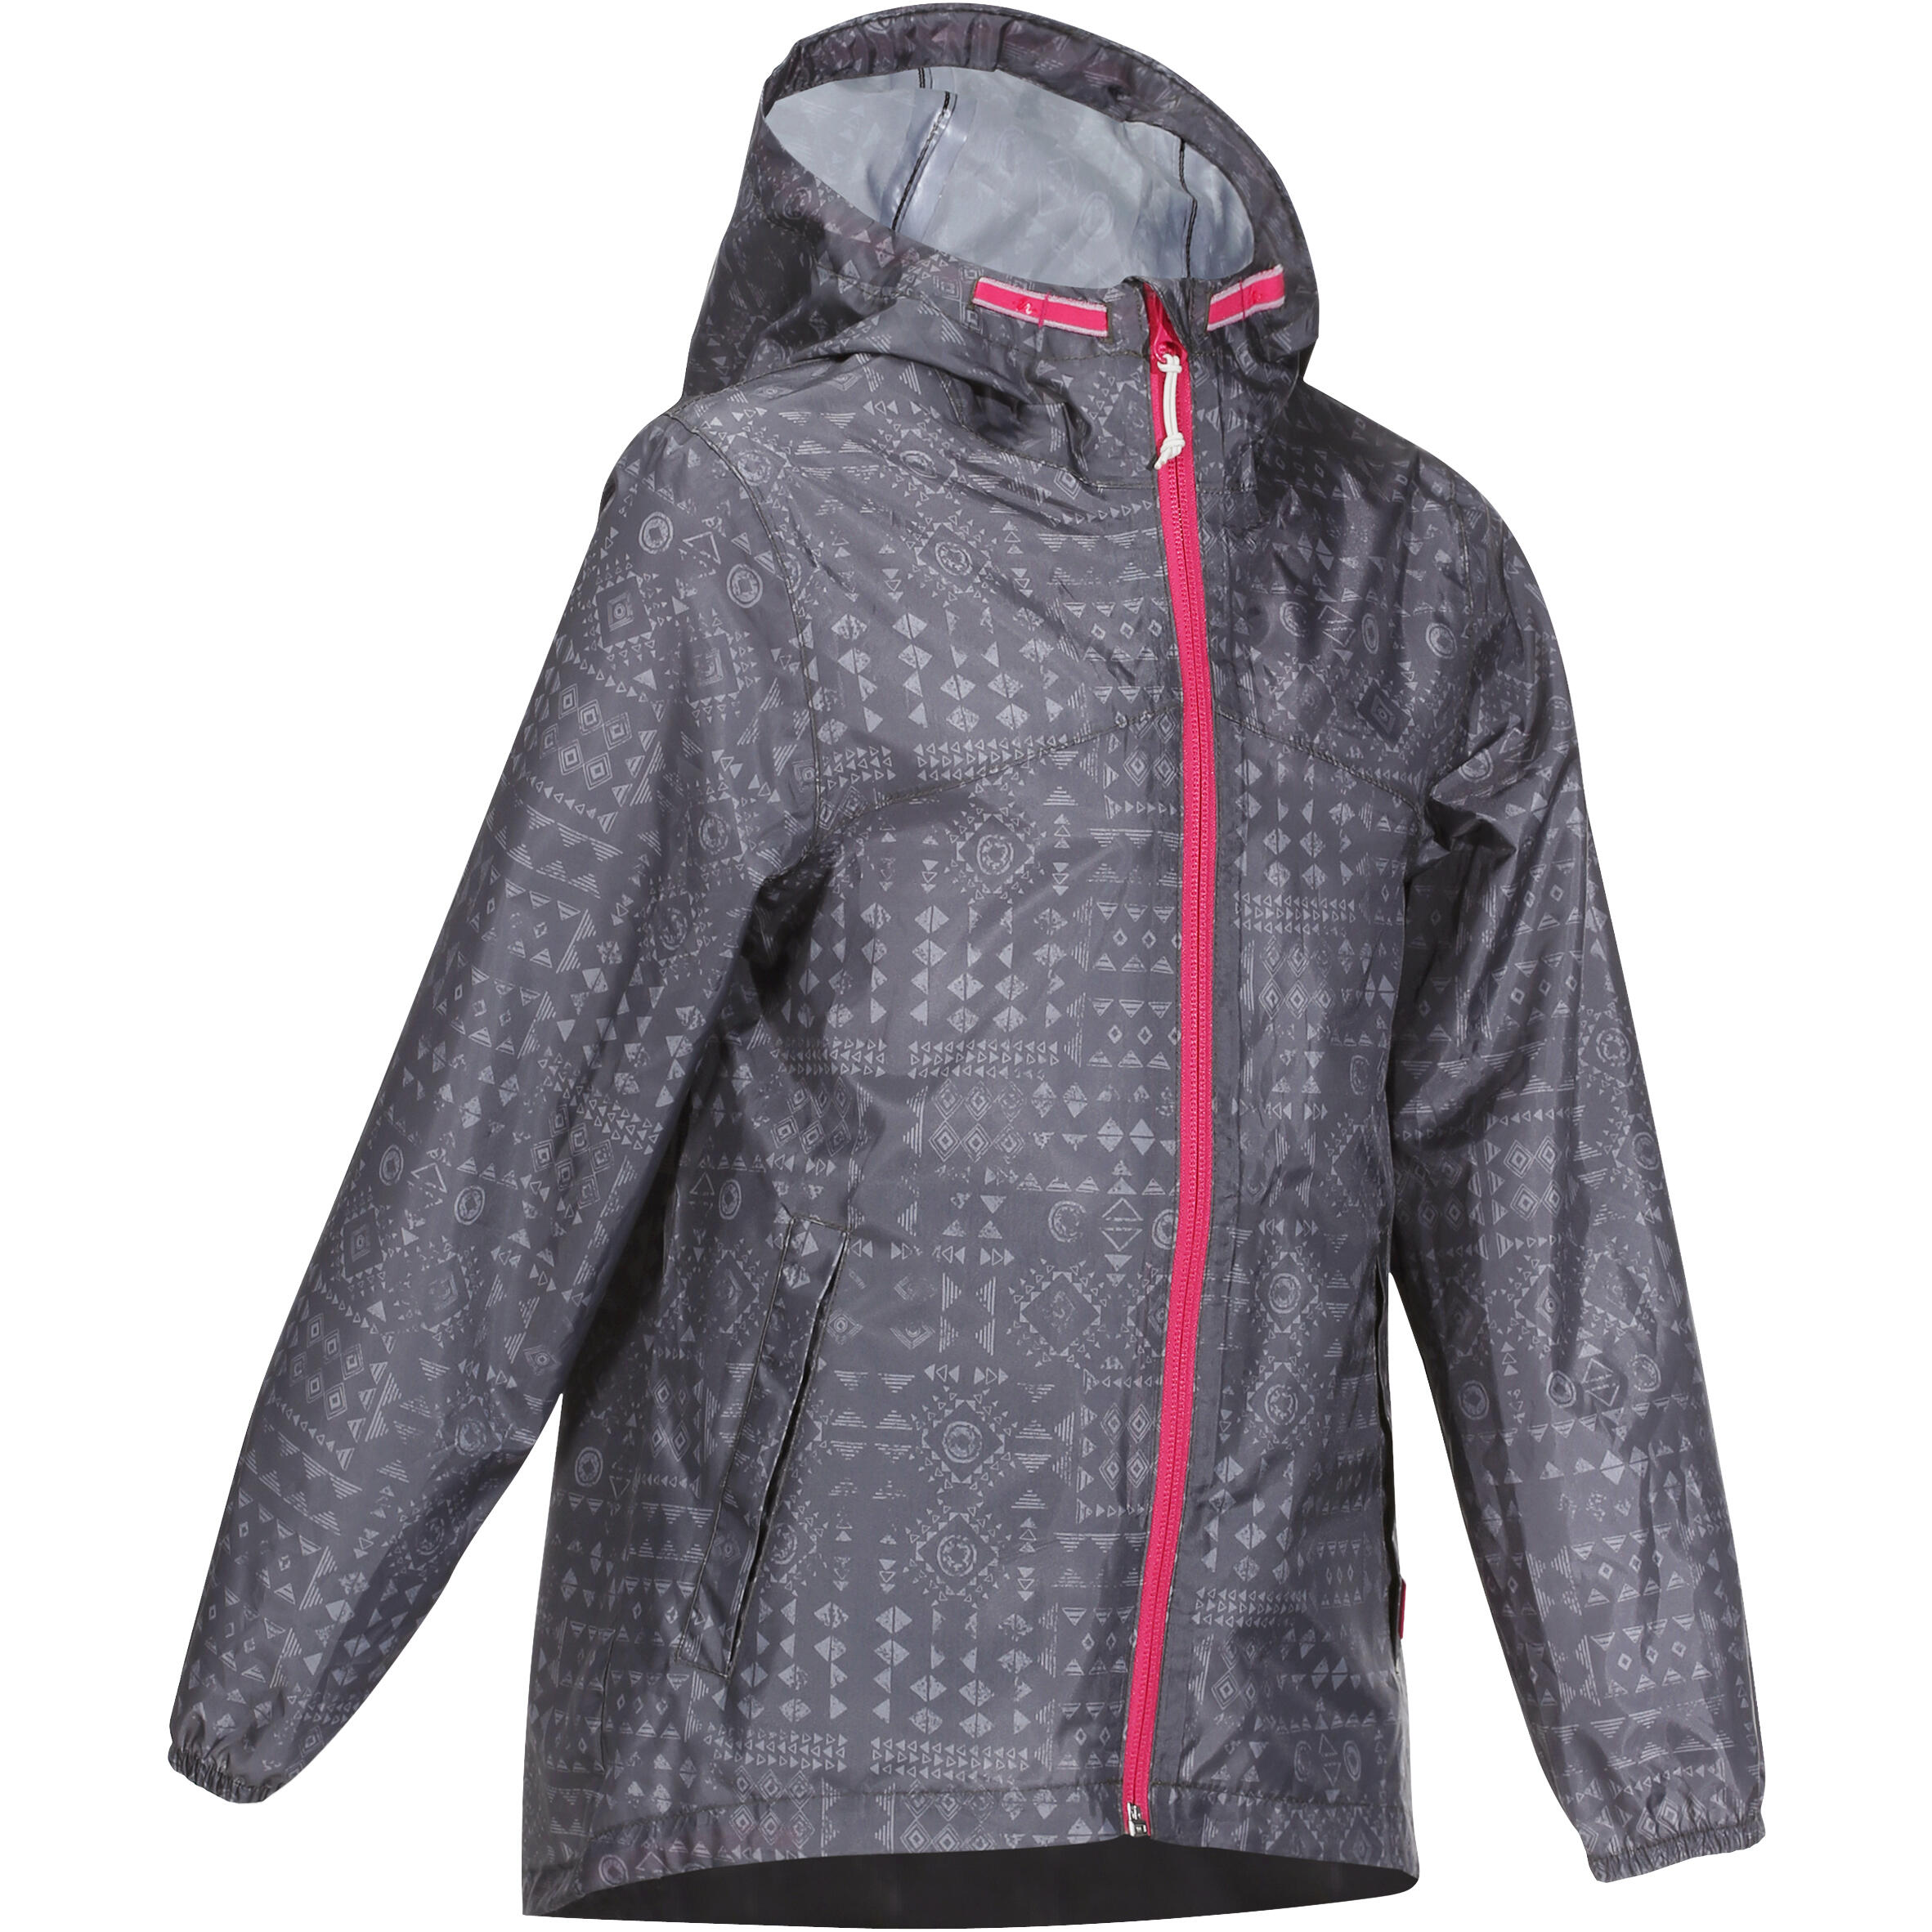 Jachetă impermeabilă Drumeție MH150 Gri copii 7 – 15 ANI La Oferta Online decathlon imagine La Oferta Online